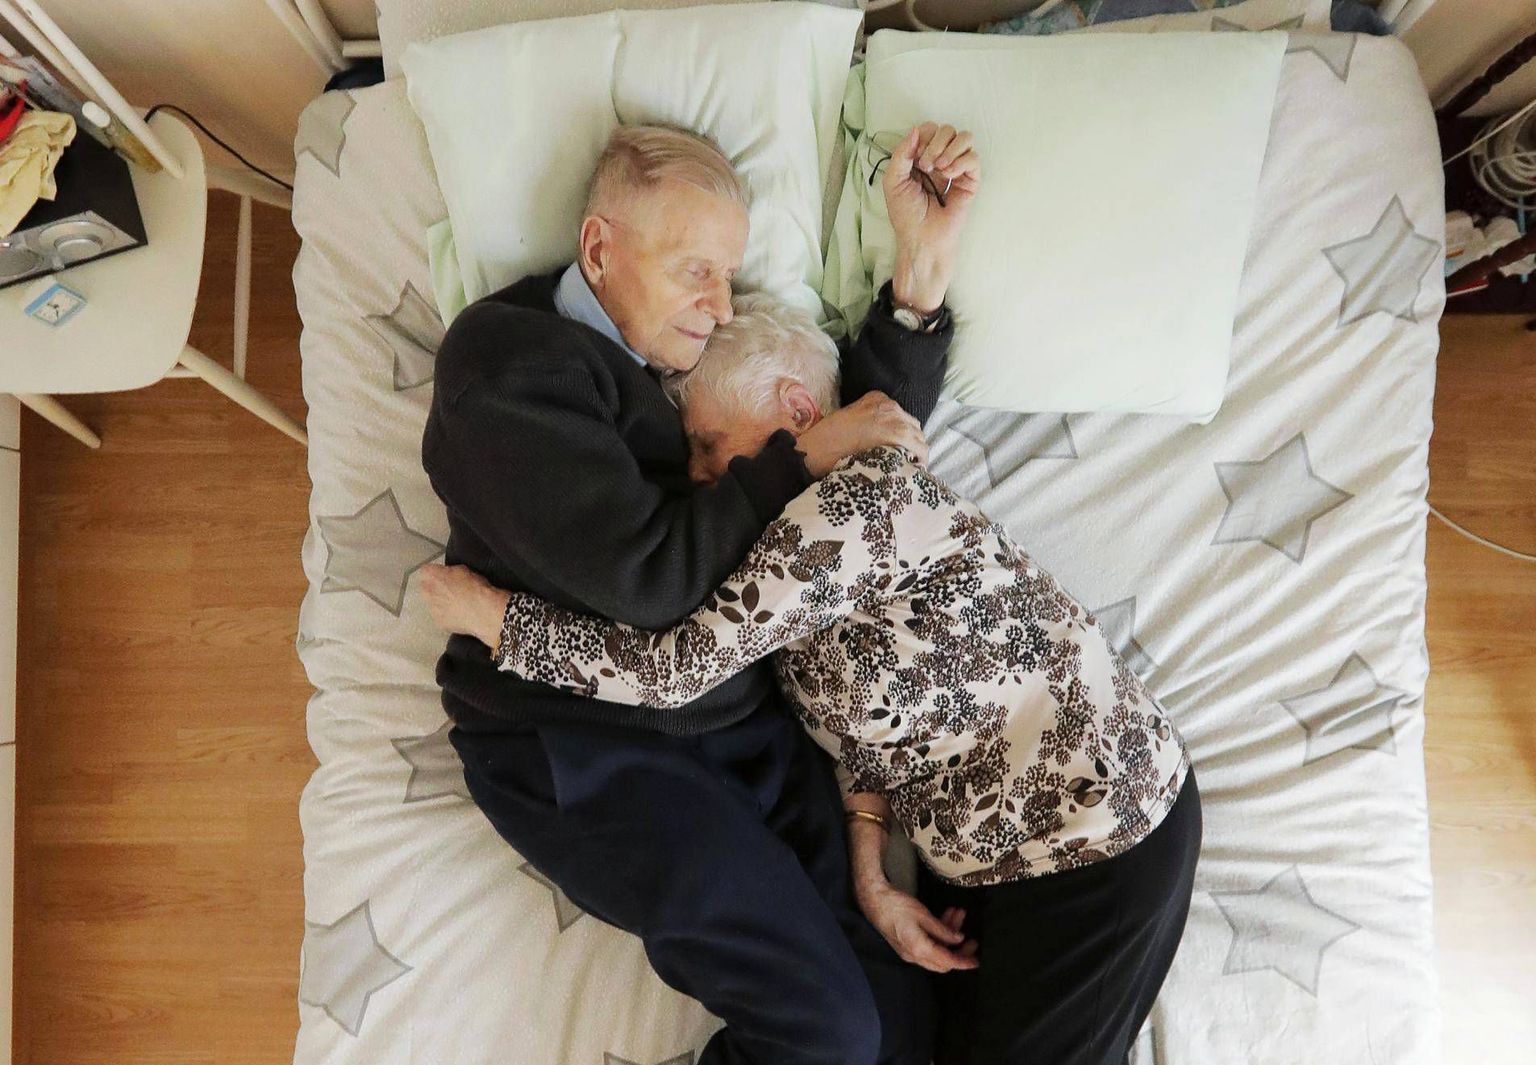 Novembris abiellunud Hemmi ja Eila elavad Oulus. Päev pärast laulatust tähistasid kumbki oma 92. sünnipäeva.